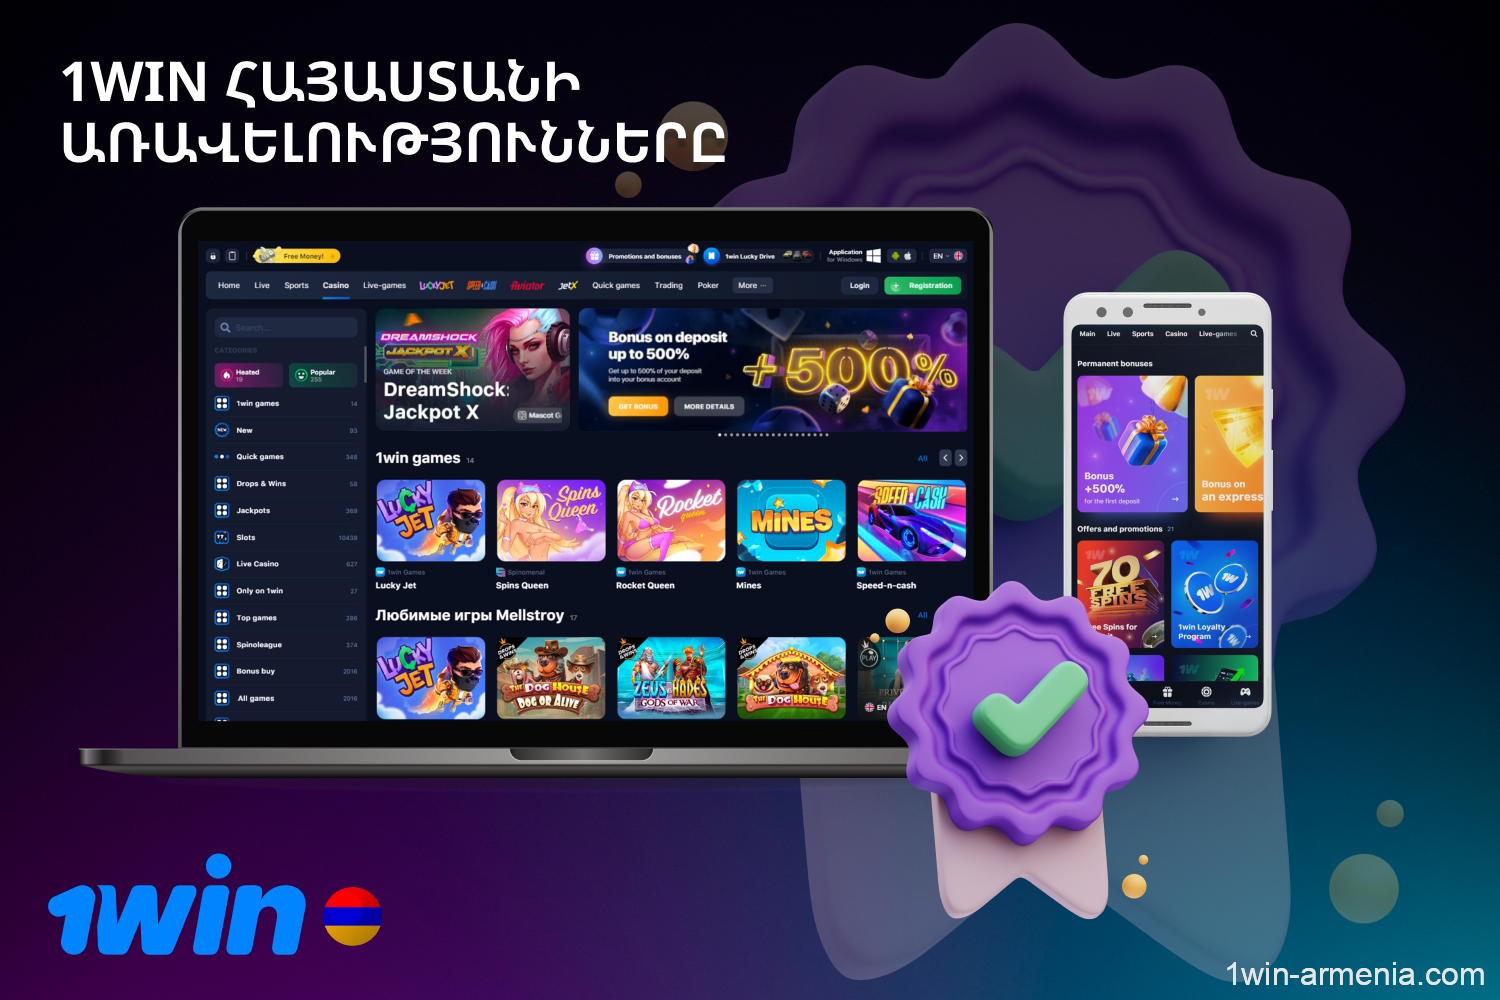 1win-ը Հայաստանից խաղացողներին առաջարկում է հարմար կայք և ժամանակակից բջջային հավելված, բազմաթիվ ակցիաներ և բարձրակարգ աջակցության ծառայություն